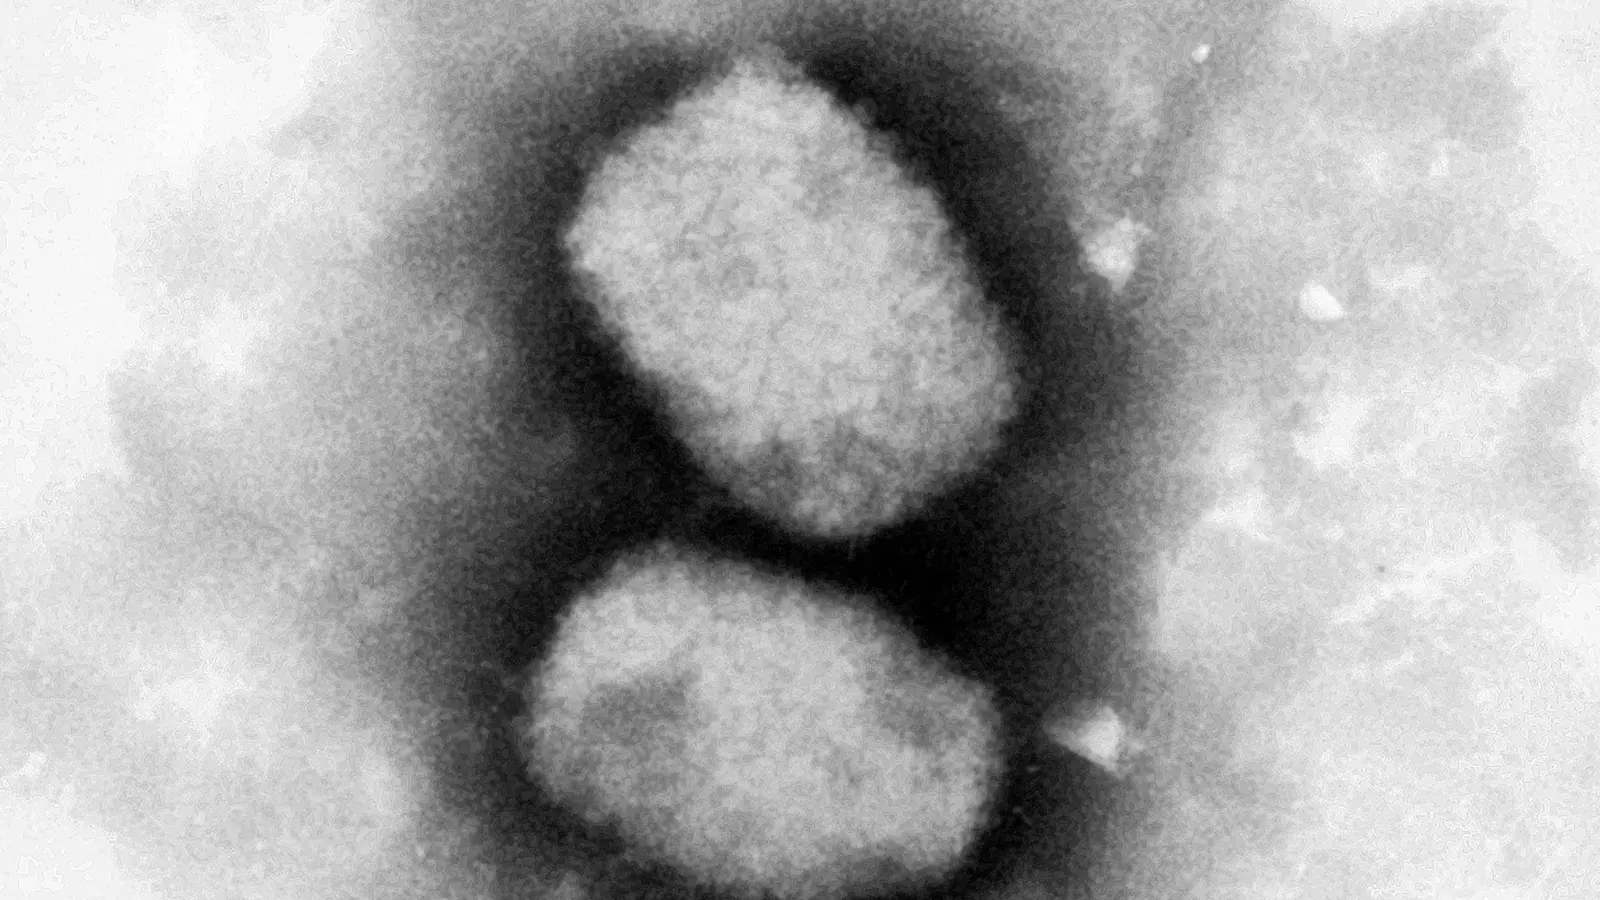 Diese vom RKI zur Verfügung gestellte elektronenmikroskopische Aufnahme zeigt das Affenpockenvirus. (Foto: Andrea Männel/RKI/dpa)